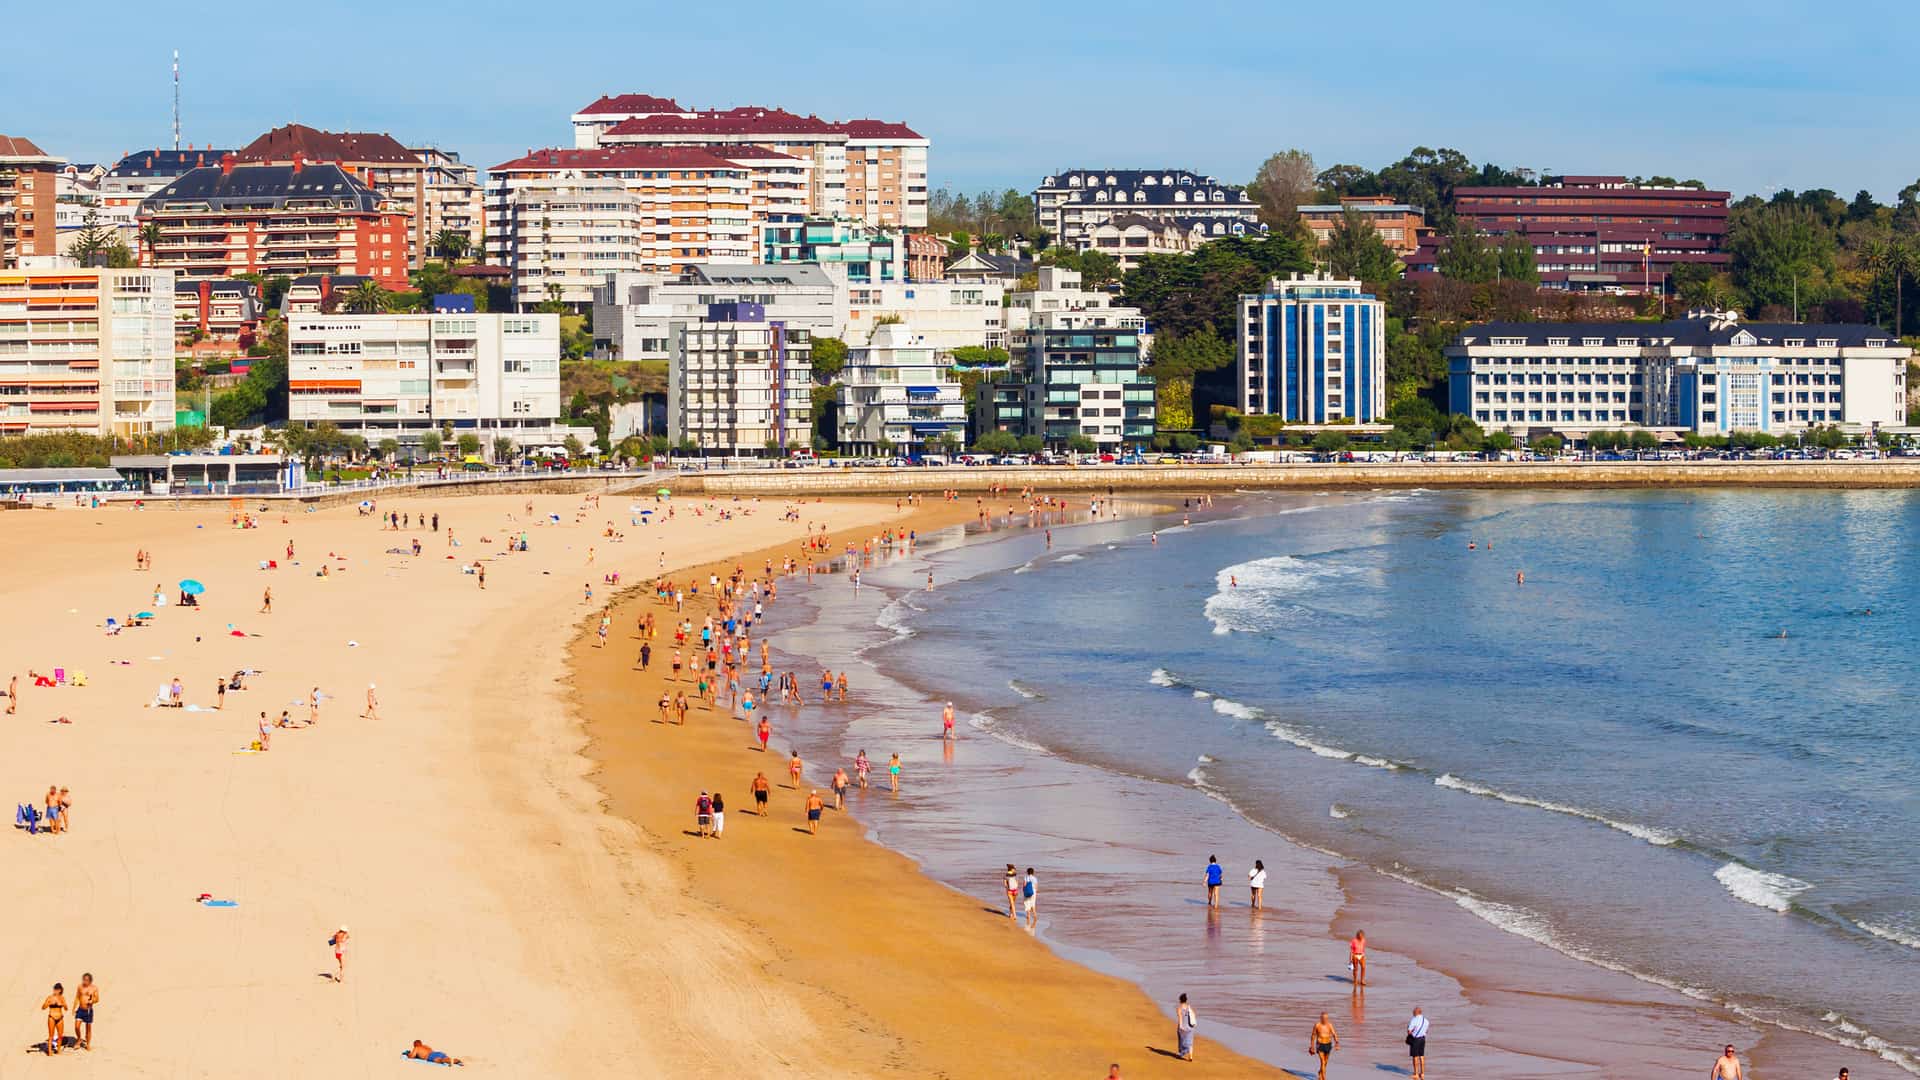 Vista aérea de la playa de la ciudad de Santander donde esta disponible la compañía telefónica orange